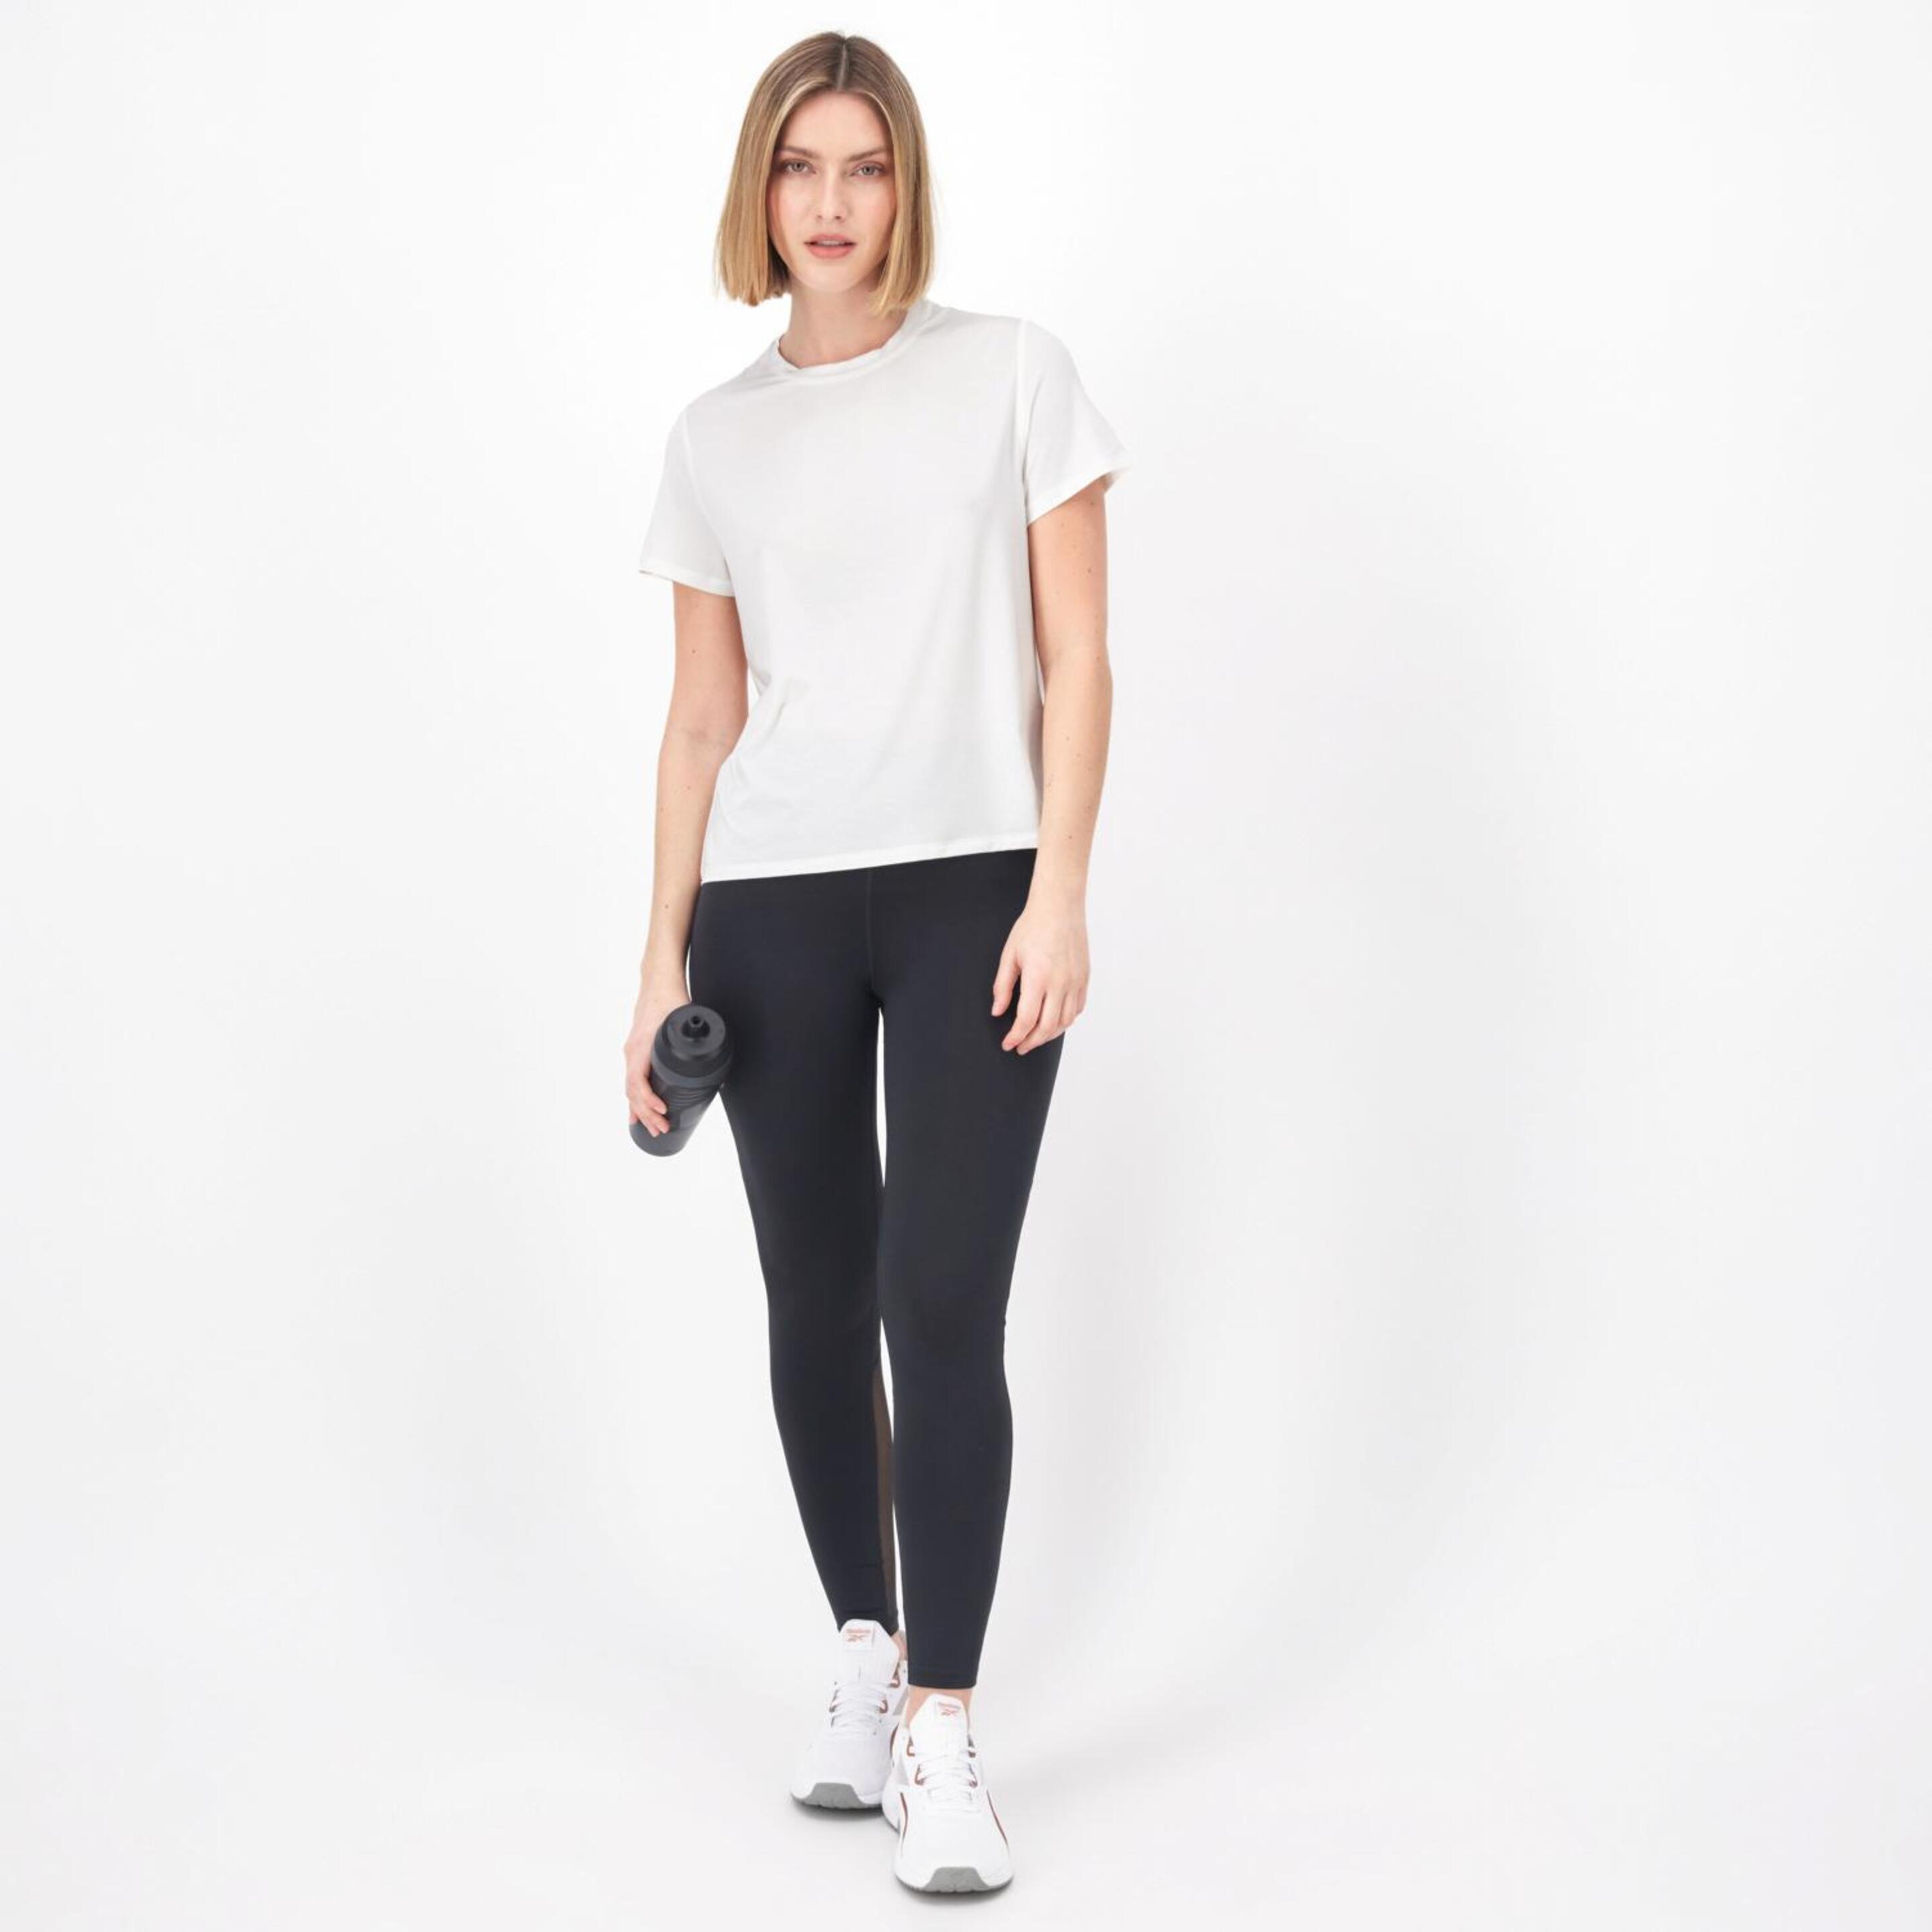 Camiseta Reebok - Blanco - Camiseta Running Mujer  | Sprinter